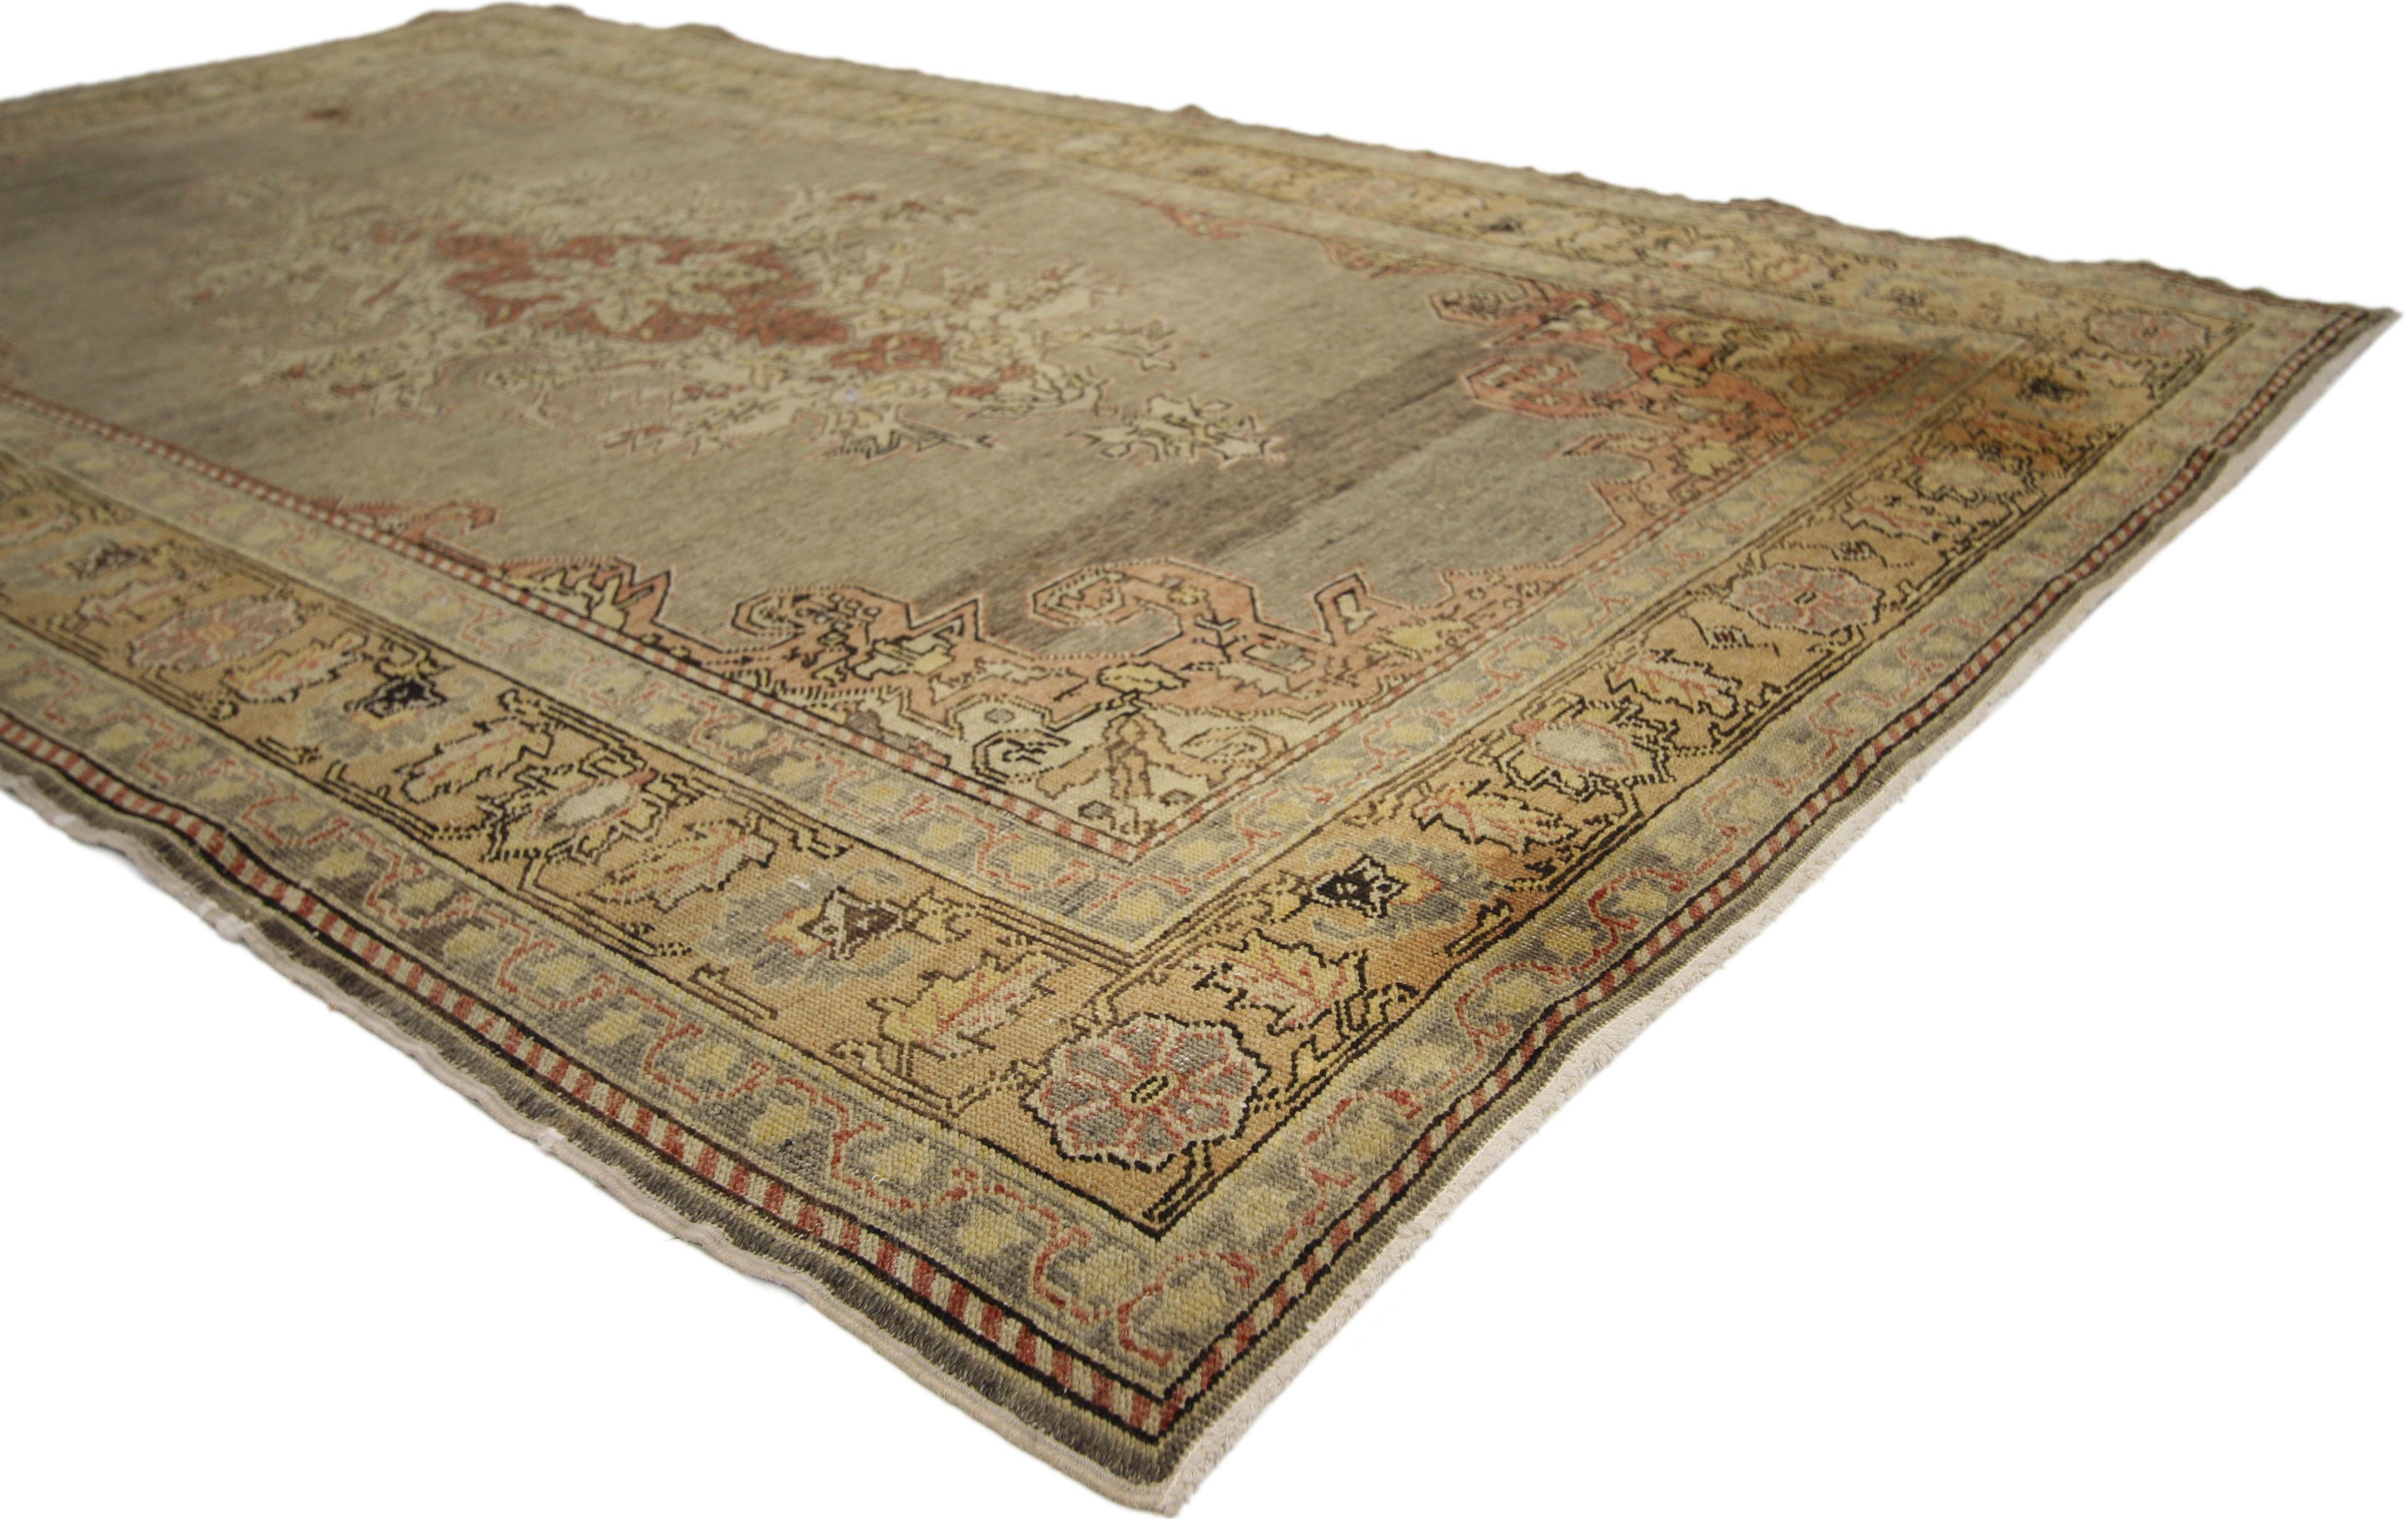 73742 Antique tapis turc Sivas au style élégant et décontracté. Les teintes gris-lavande de ce tapis ancien de Sivas en font un exemple incroyable de tissage turc. Un médaillon central orné et des écoinçons coordonnés sont mis en valeur par les